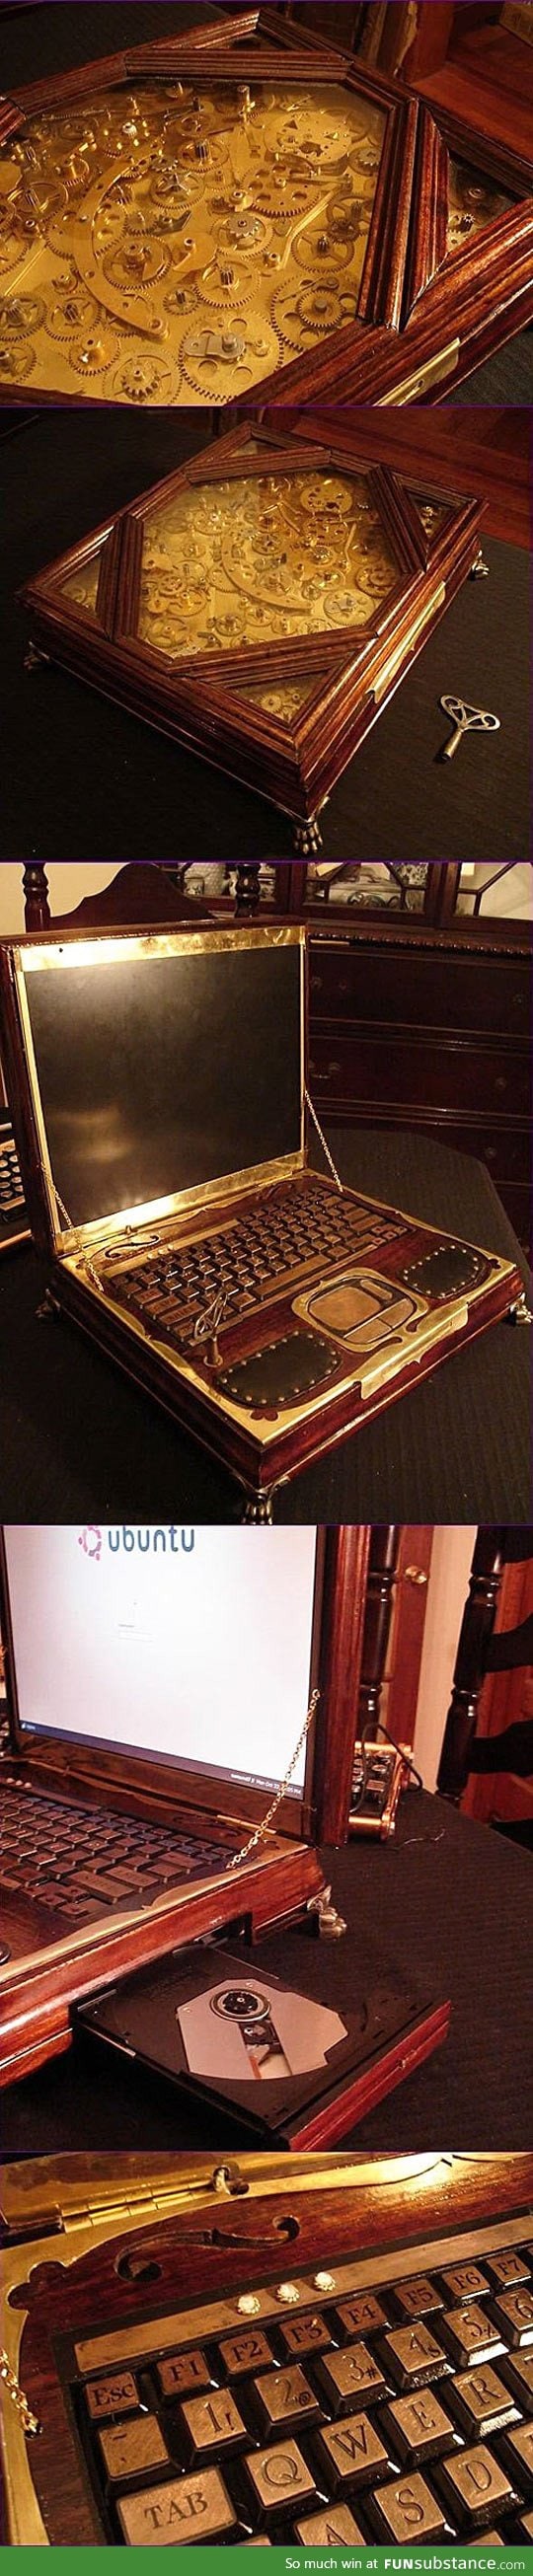 Gorgeous steampunk laptop